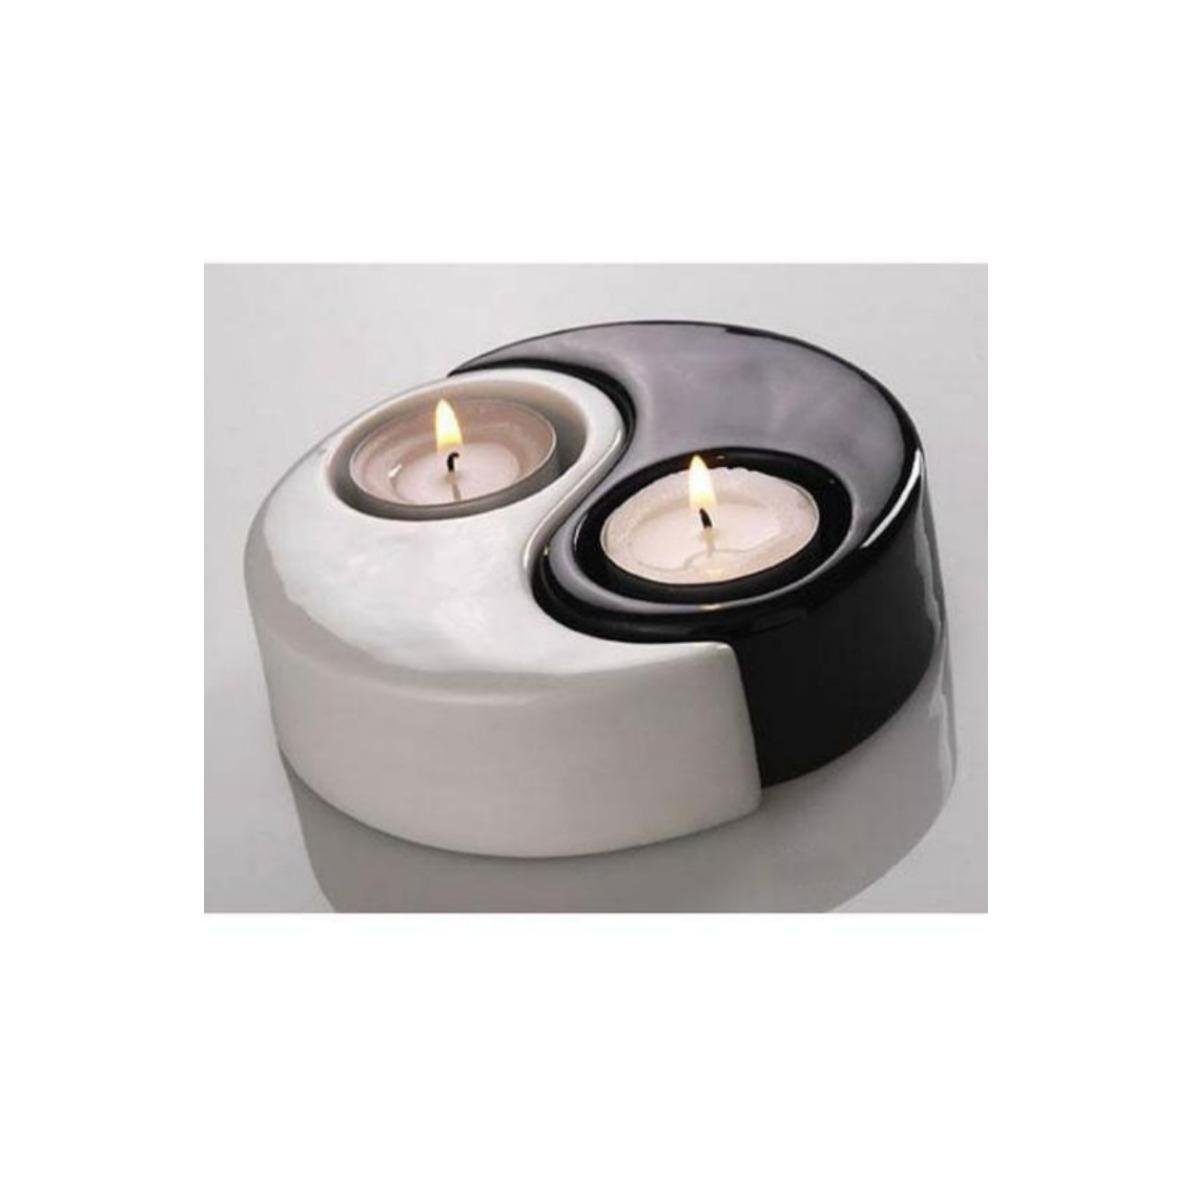 Wagner & Apel Porzellan Standkerzenhalter 03083/40 - Yin-Yang Schalen (2) | Kerzenständer